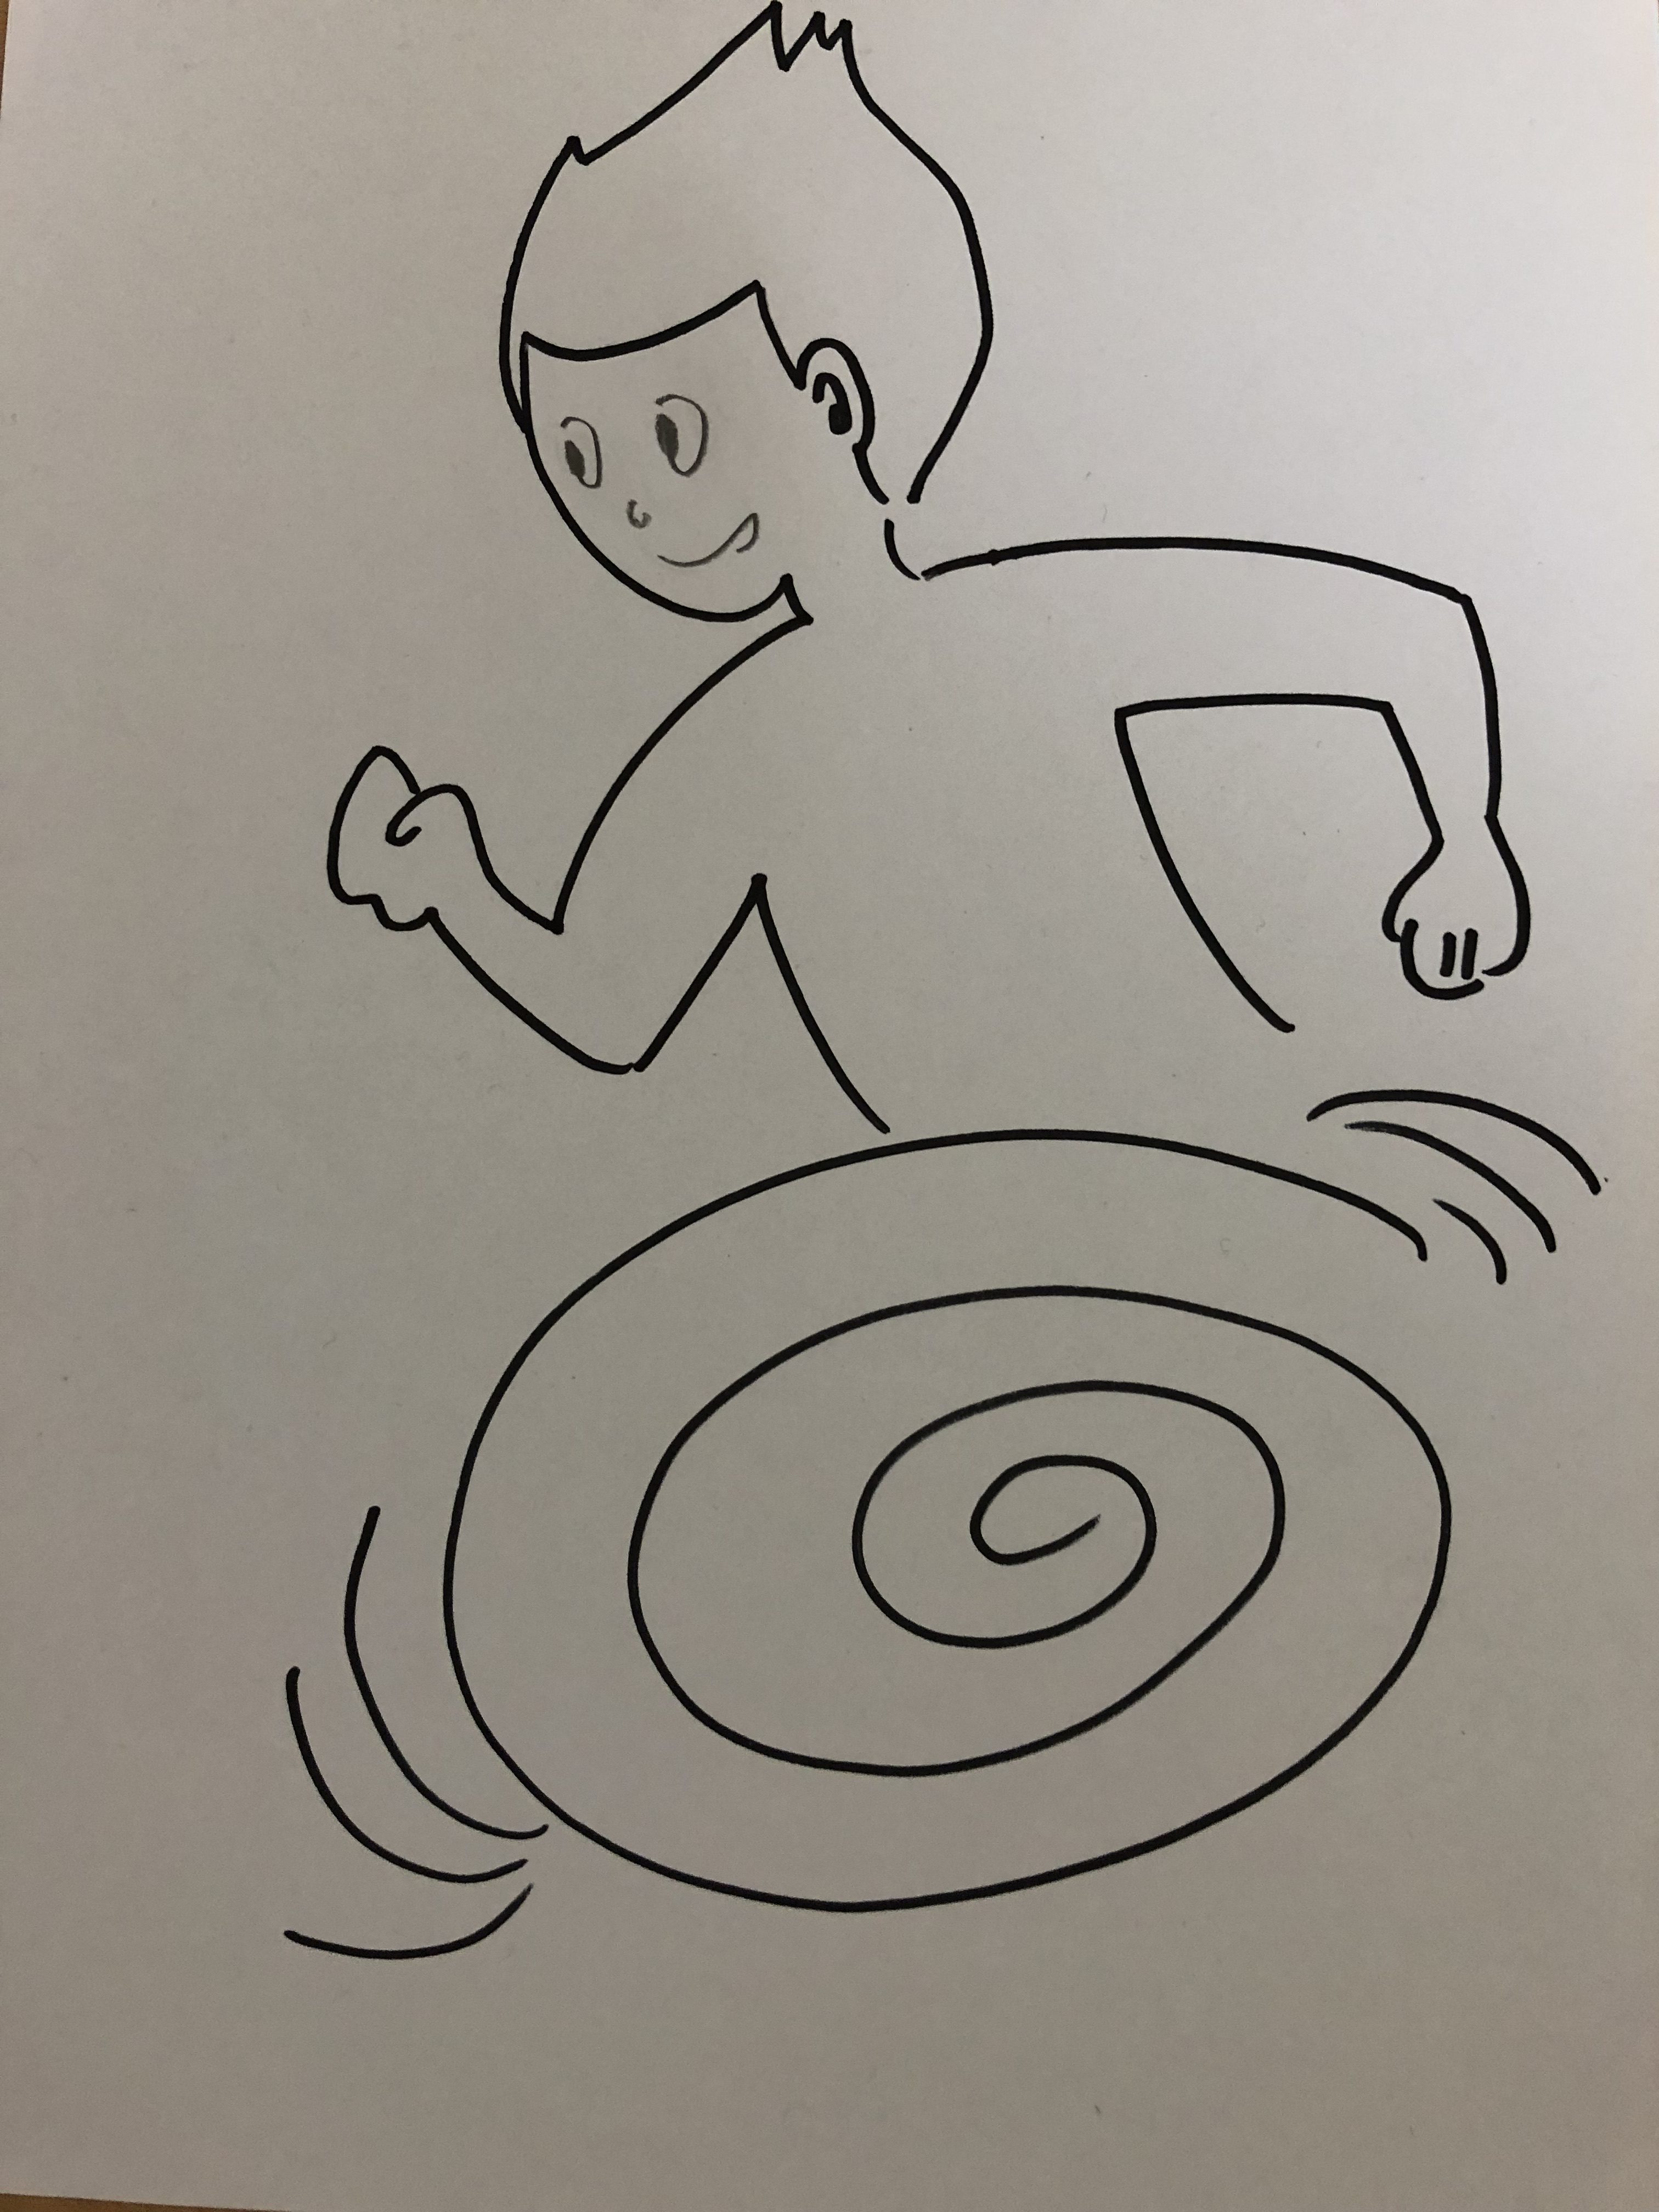 マンガの表現に学ぶ実走 下半身をクルクル回転させるイメージで走ってみよう ドラクエ